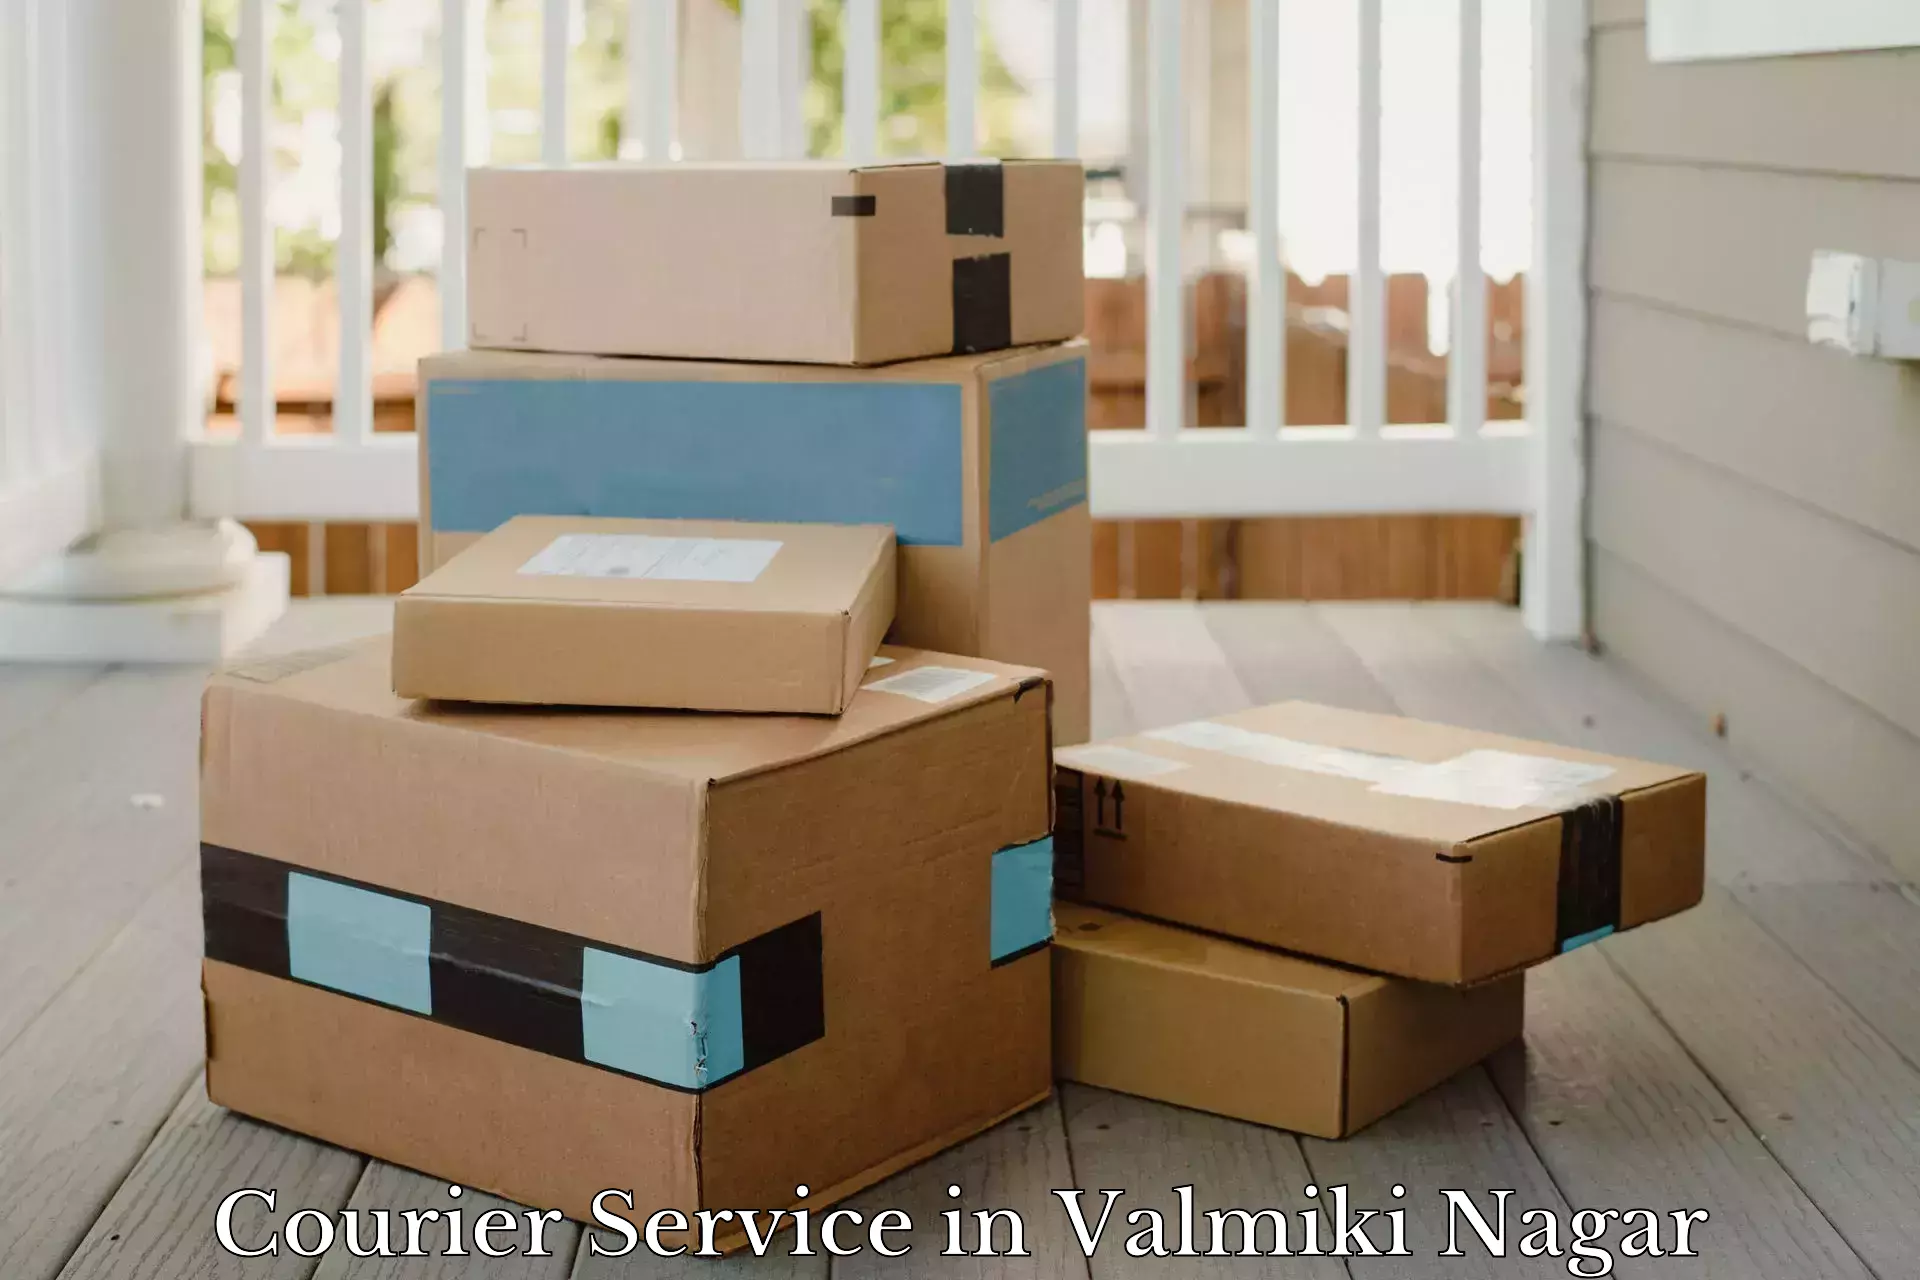 Advanced shipping logistics in Valmiki Nagar